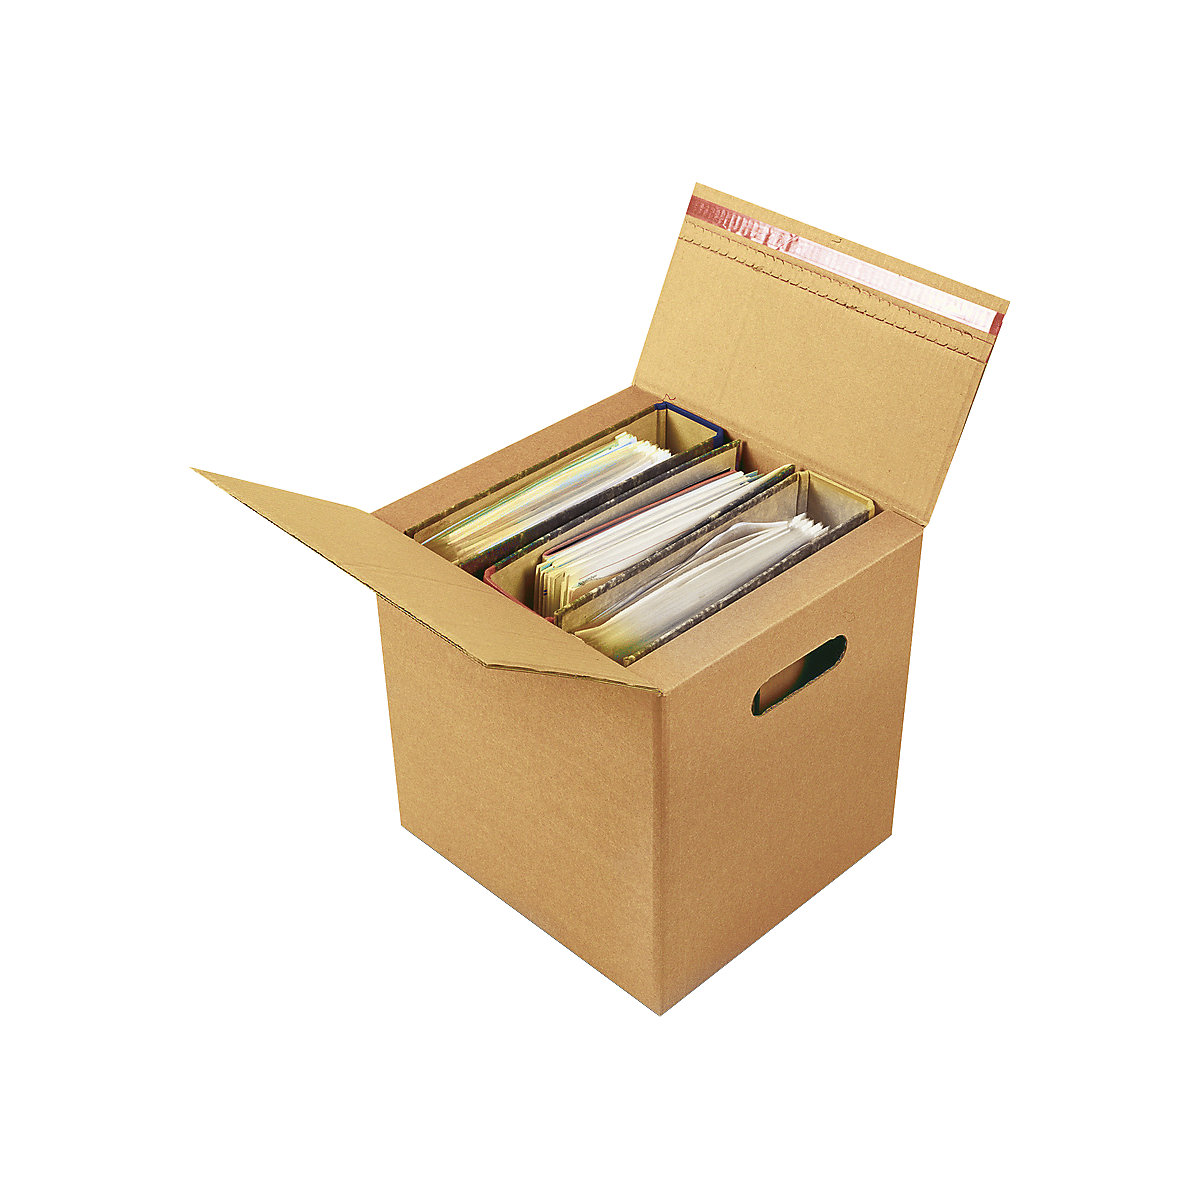 Ordner-Karton, für 2 – 3 Ordner mit Selbstklebeverschluss, Innenmaße 320 x 288 x 315 mm, ab 80 Stk-1